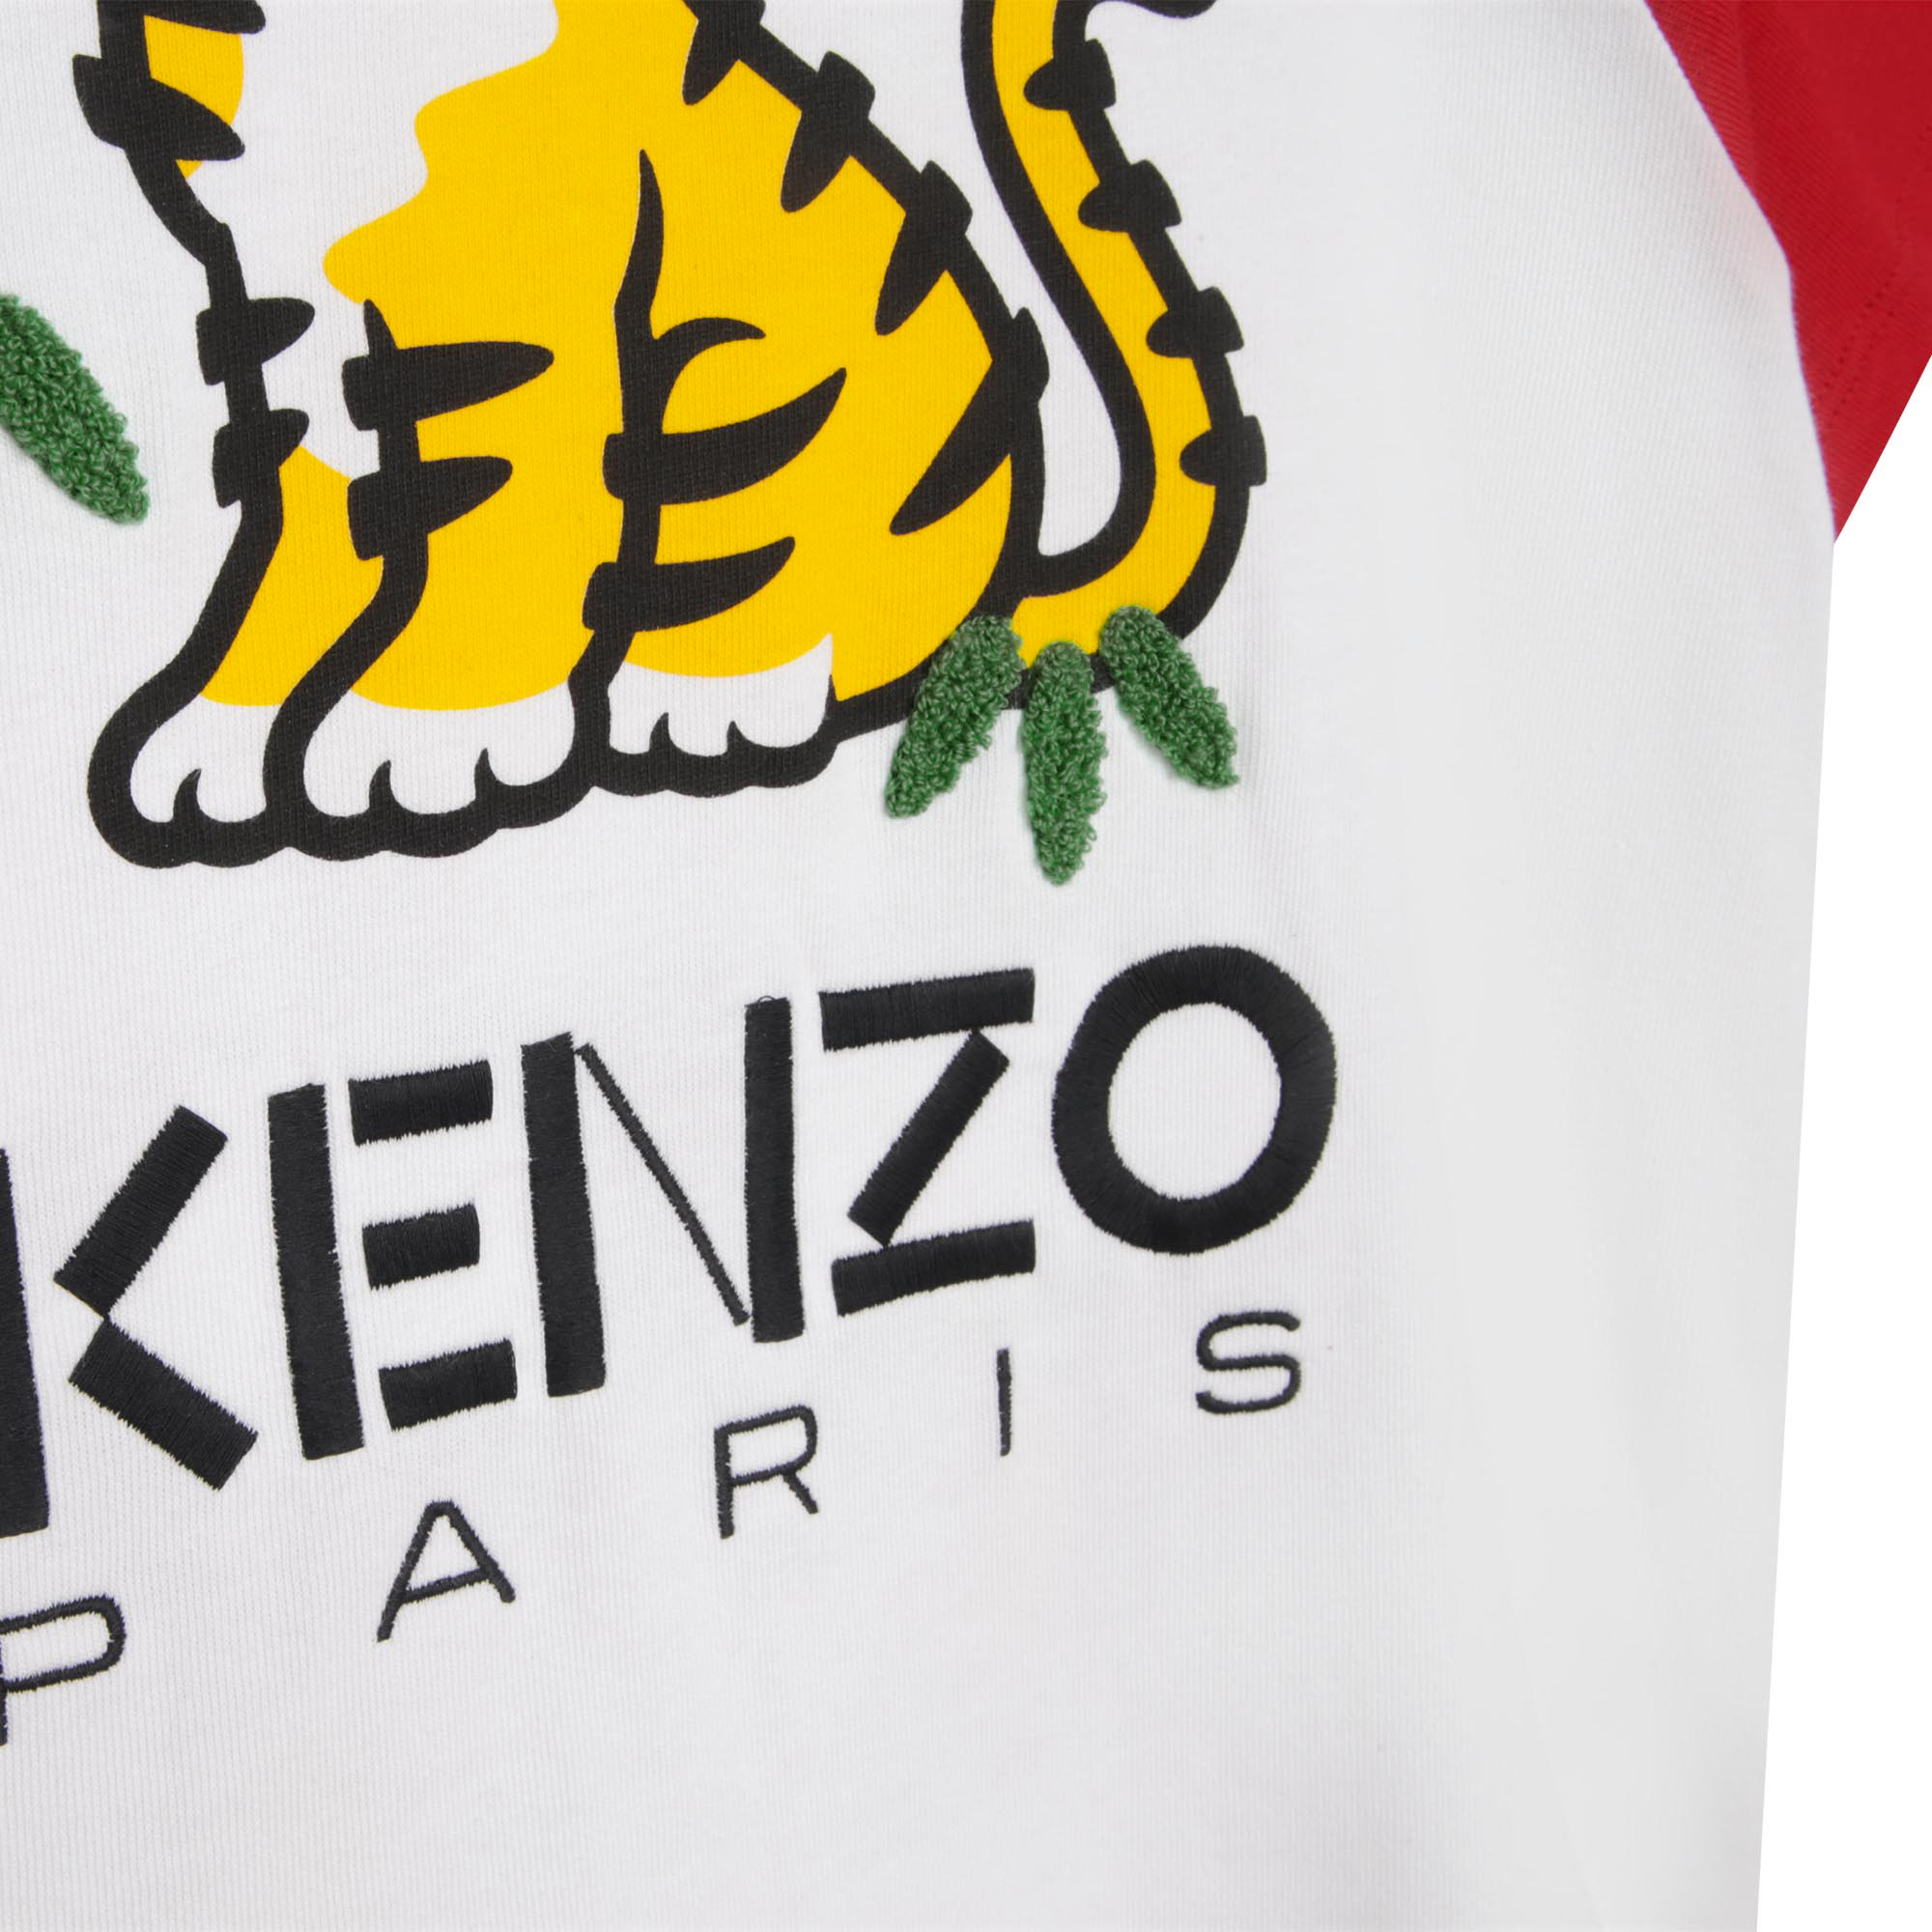 Short-sleeved cotton T-shirt KENZO KIDS for GIRL